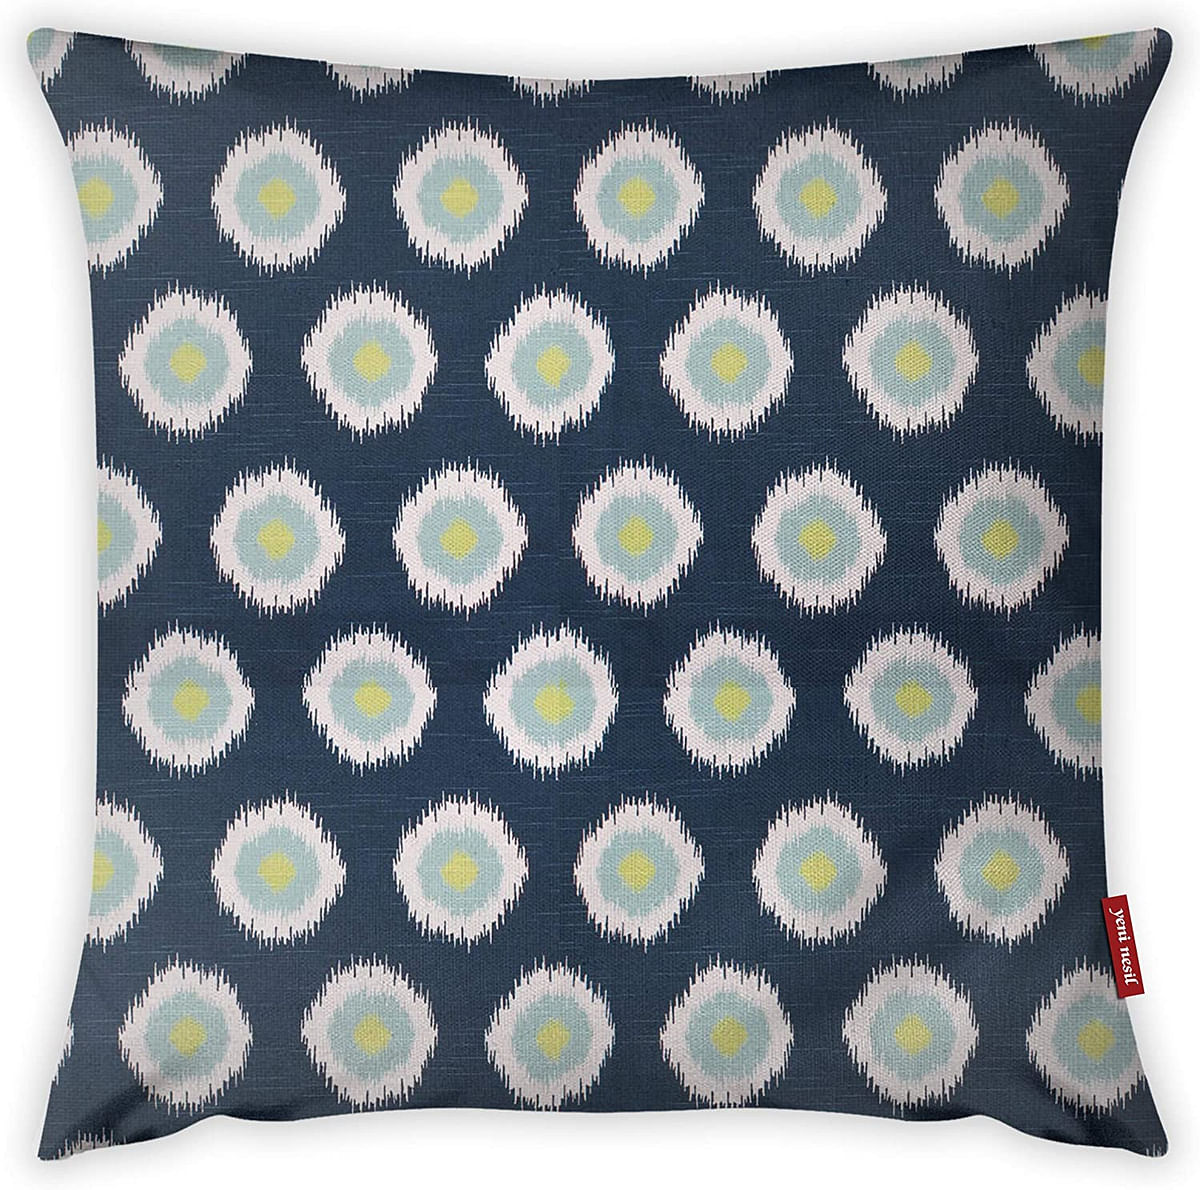 Mon Desire Decorative Throw Pillow Cover, Multi-Colour, 44 x 44 cm, MDSYST2756